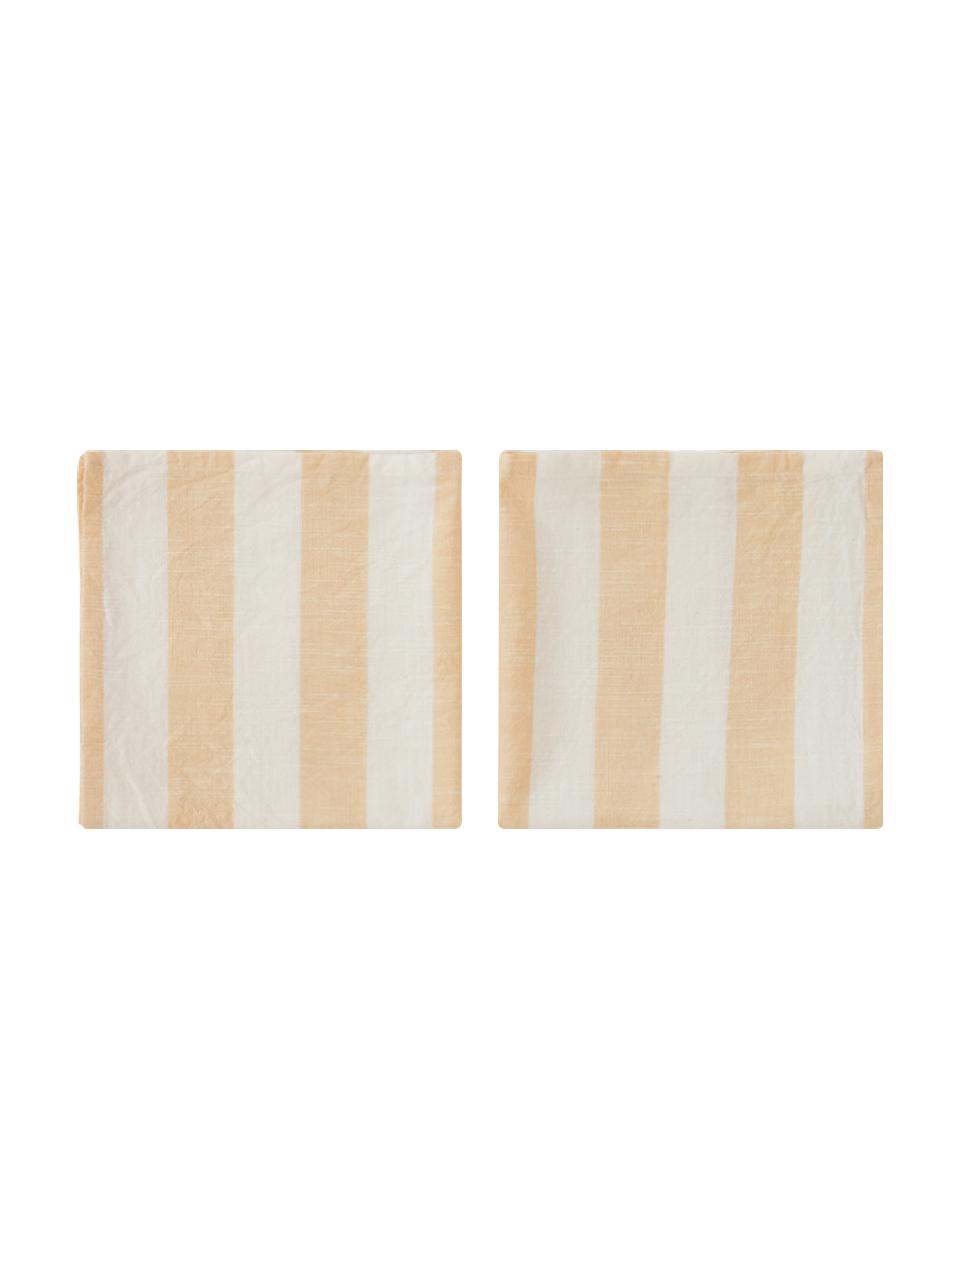 Serviettes de table coton Strip, 2 pièces, Coton, Jaune, blanc, larg. 45 x long. 45 cm